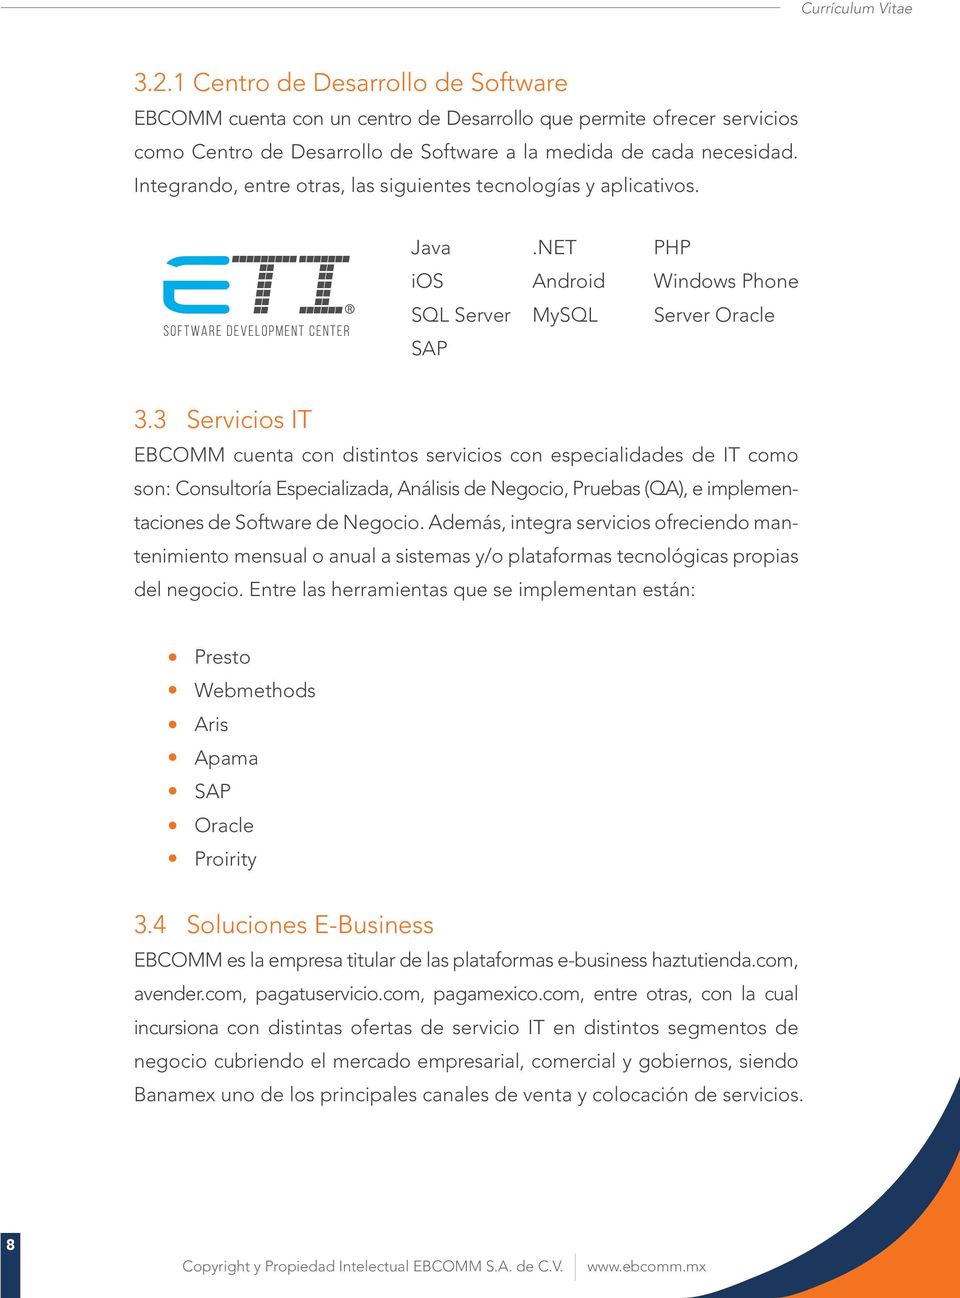 3 Servicios IT EBCOMM cuenta con distintos servicios con especialidades de IT como son: Consultoría Especializada, Análisis de Negocio, Pruebas (QA), e implementaciones de Software de Negocio.